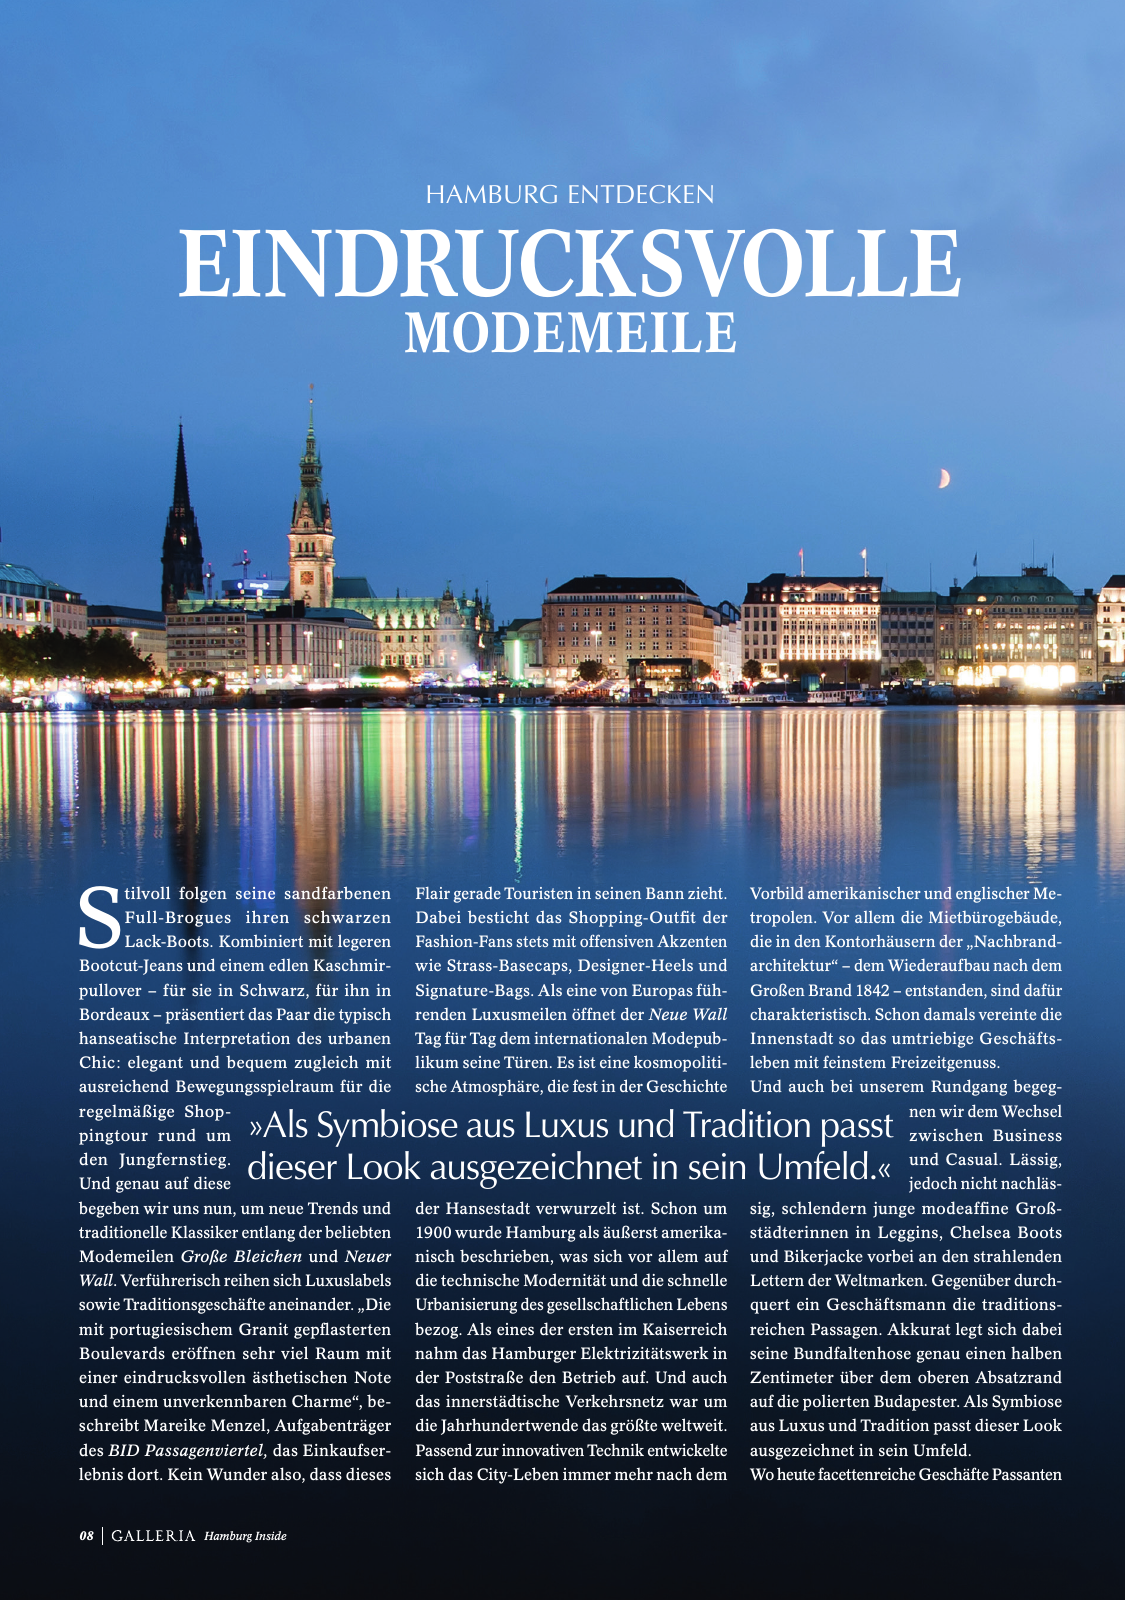 Vorschau GALLERIA Magazin Hamburg Inside 2 Seite 8